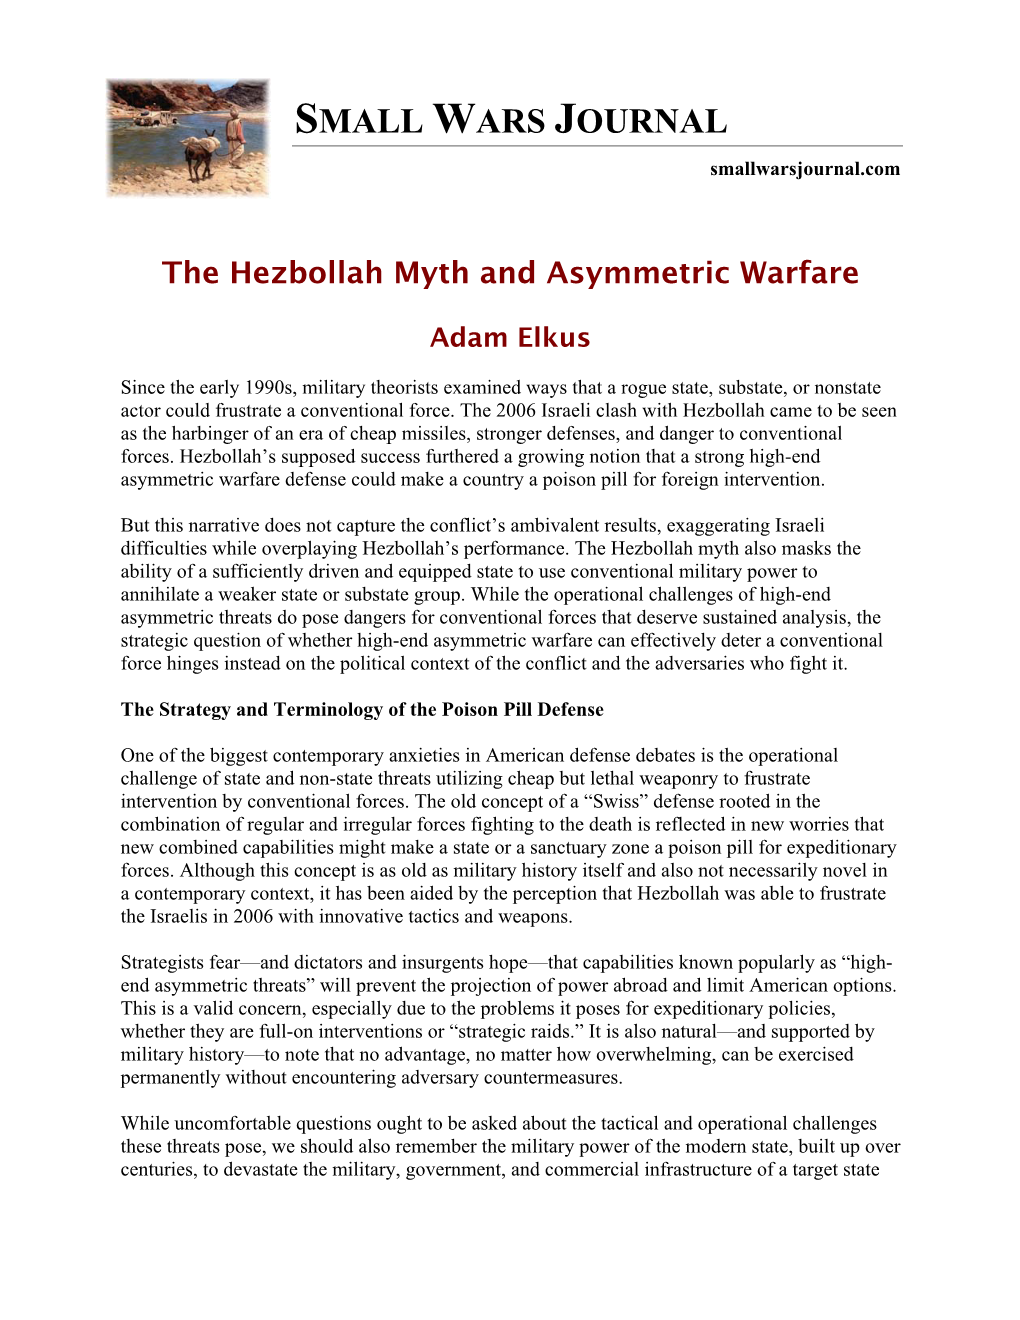 The Hezbollah Myth and Asymmetric Warfare